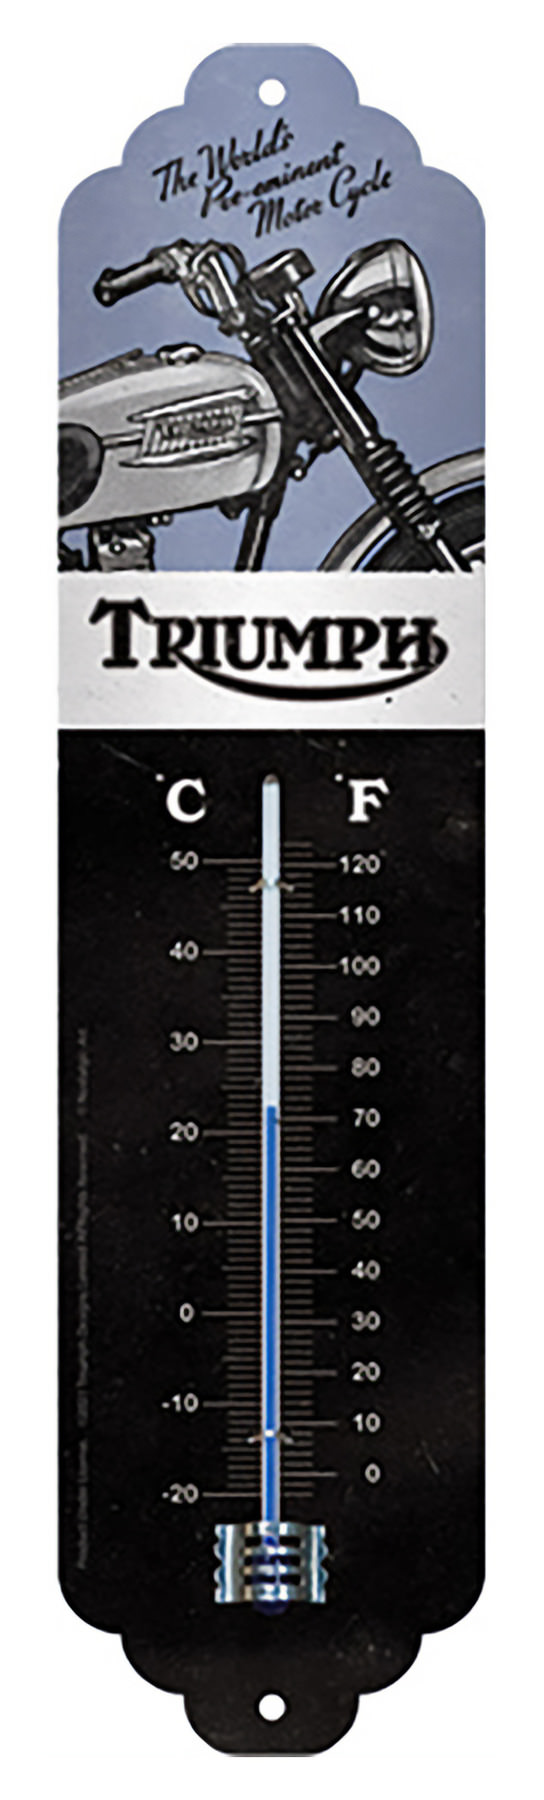 Thermomètre Triumph - La Décoration/Les thermomètres - nostalgic-deco